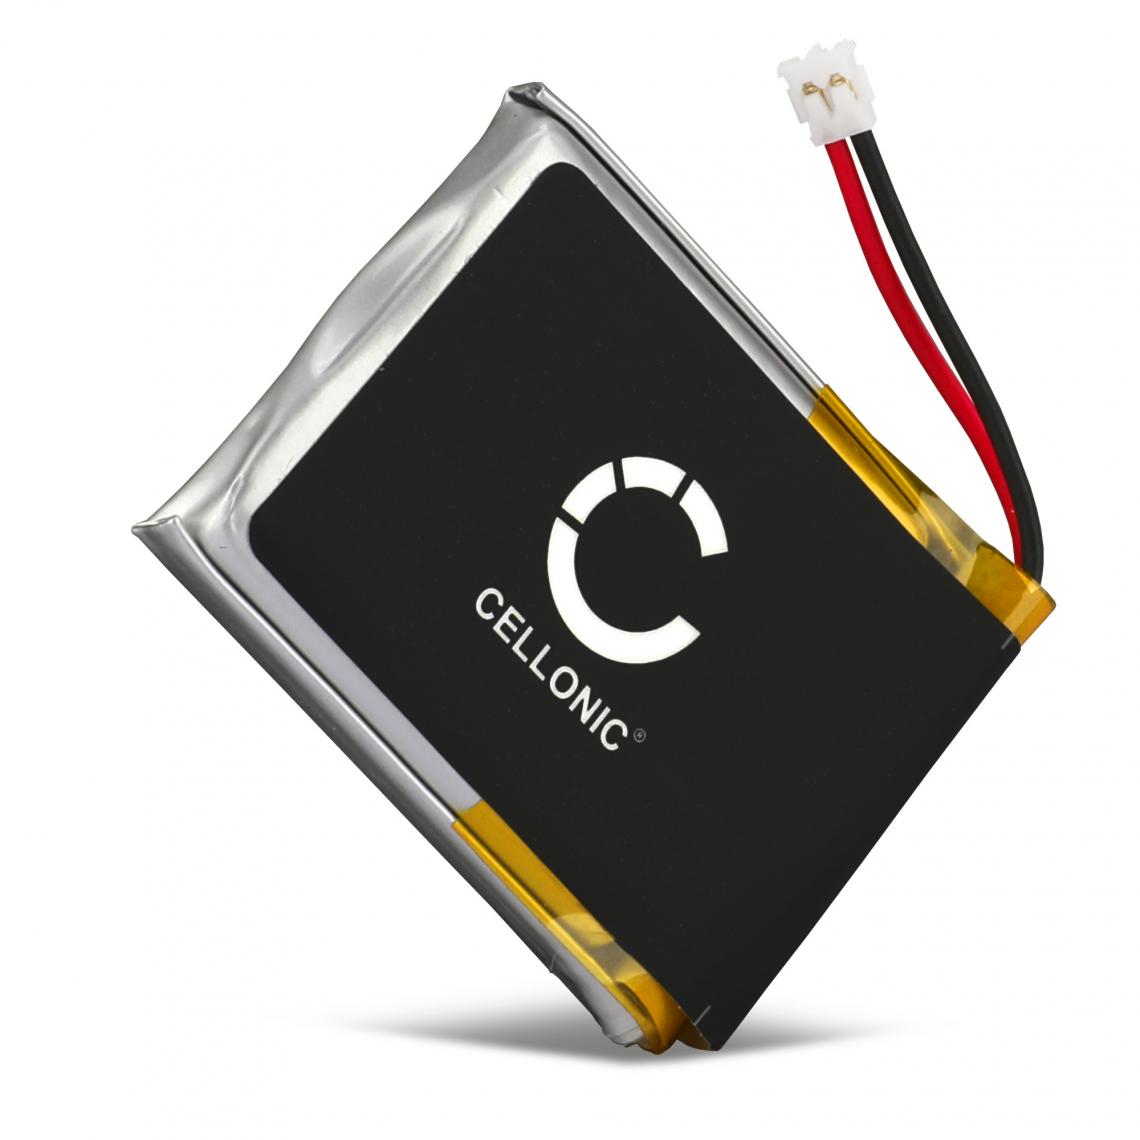 CELLONIC - CELLONIC Batterie Compatible avec Montre Garmin Fenix 3 / Fenix 3 HR 300mAh Accu Rechange pour GPS - Accessoires montres connectées